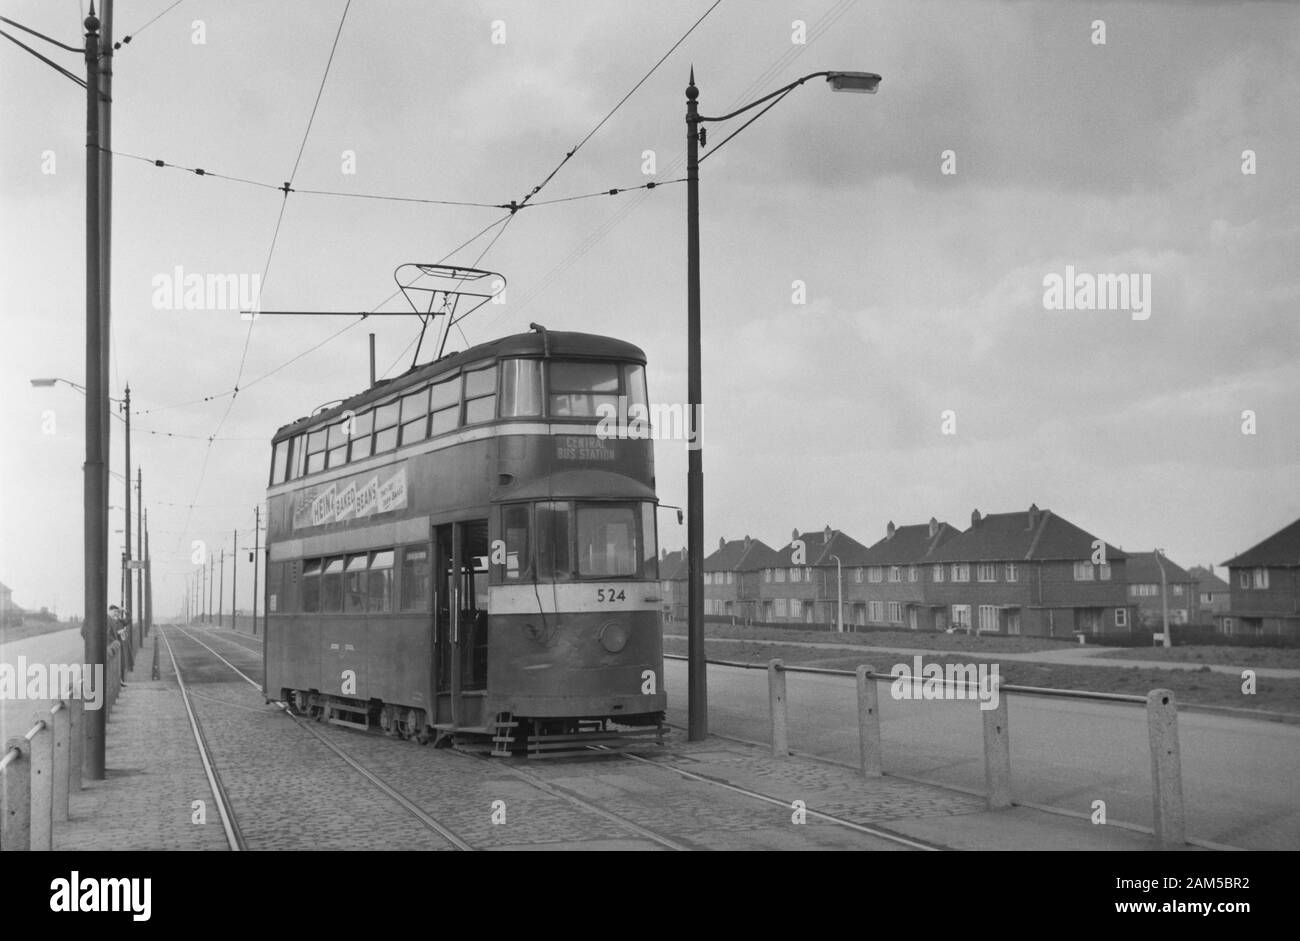 Straßenbahn Nr. Leeds (Feltham) 524 Gleiswechsel und auf der Strecke zum zentralen Busbahnhof. Bild, das 1959 vor der Stilllegung des Tramway-Netzes aufgenommen wurde. Stockfoto